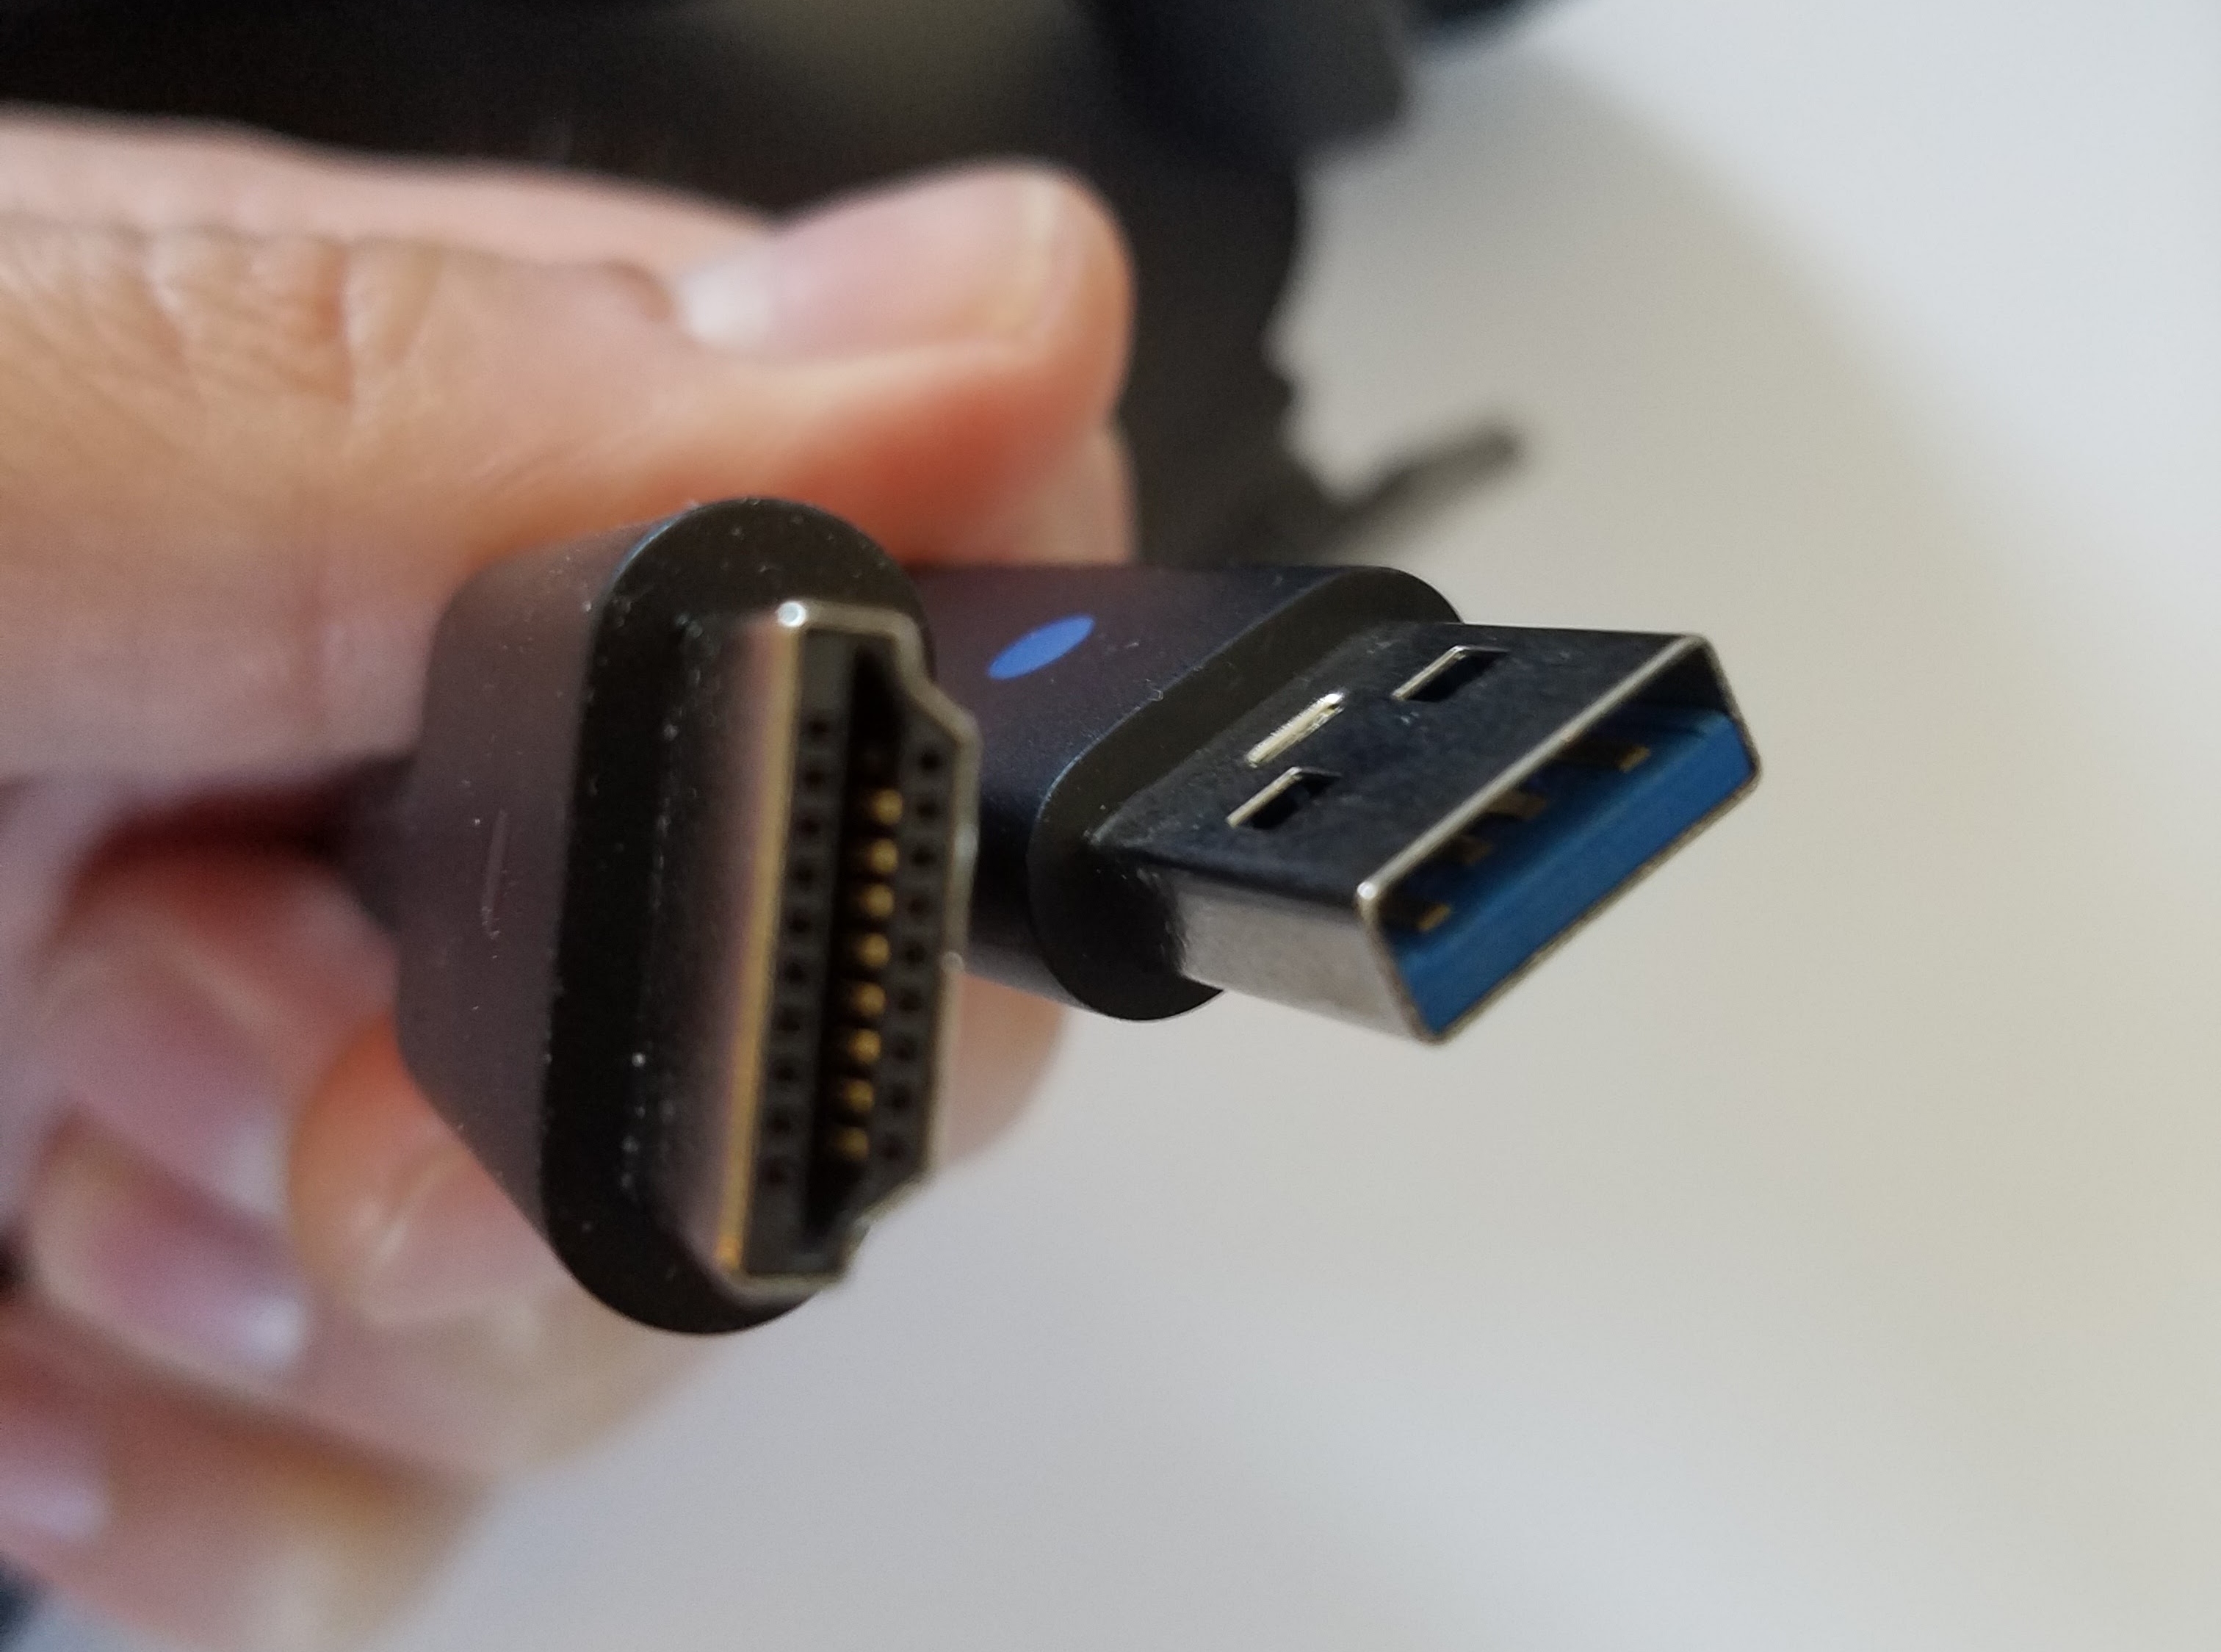 Det er enkelt å koble til Rift: 1 x USB fra headset og inn i maskinen sammen med HDMI-kabelen, deretter kobler man i kameraet (Oculus anbefaler USB 3.0, men vi har ikke merket noen forskjell).